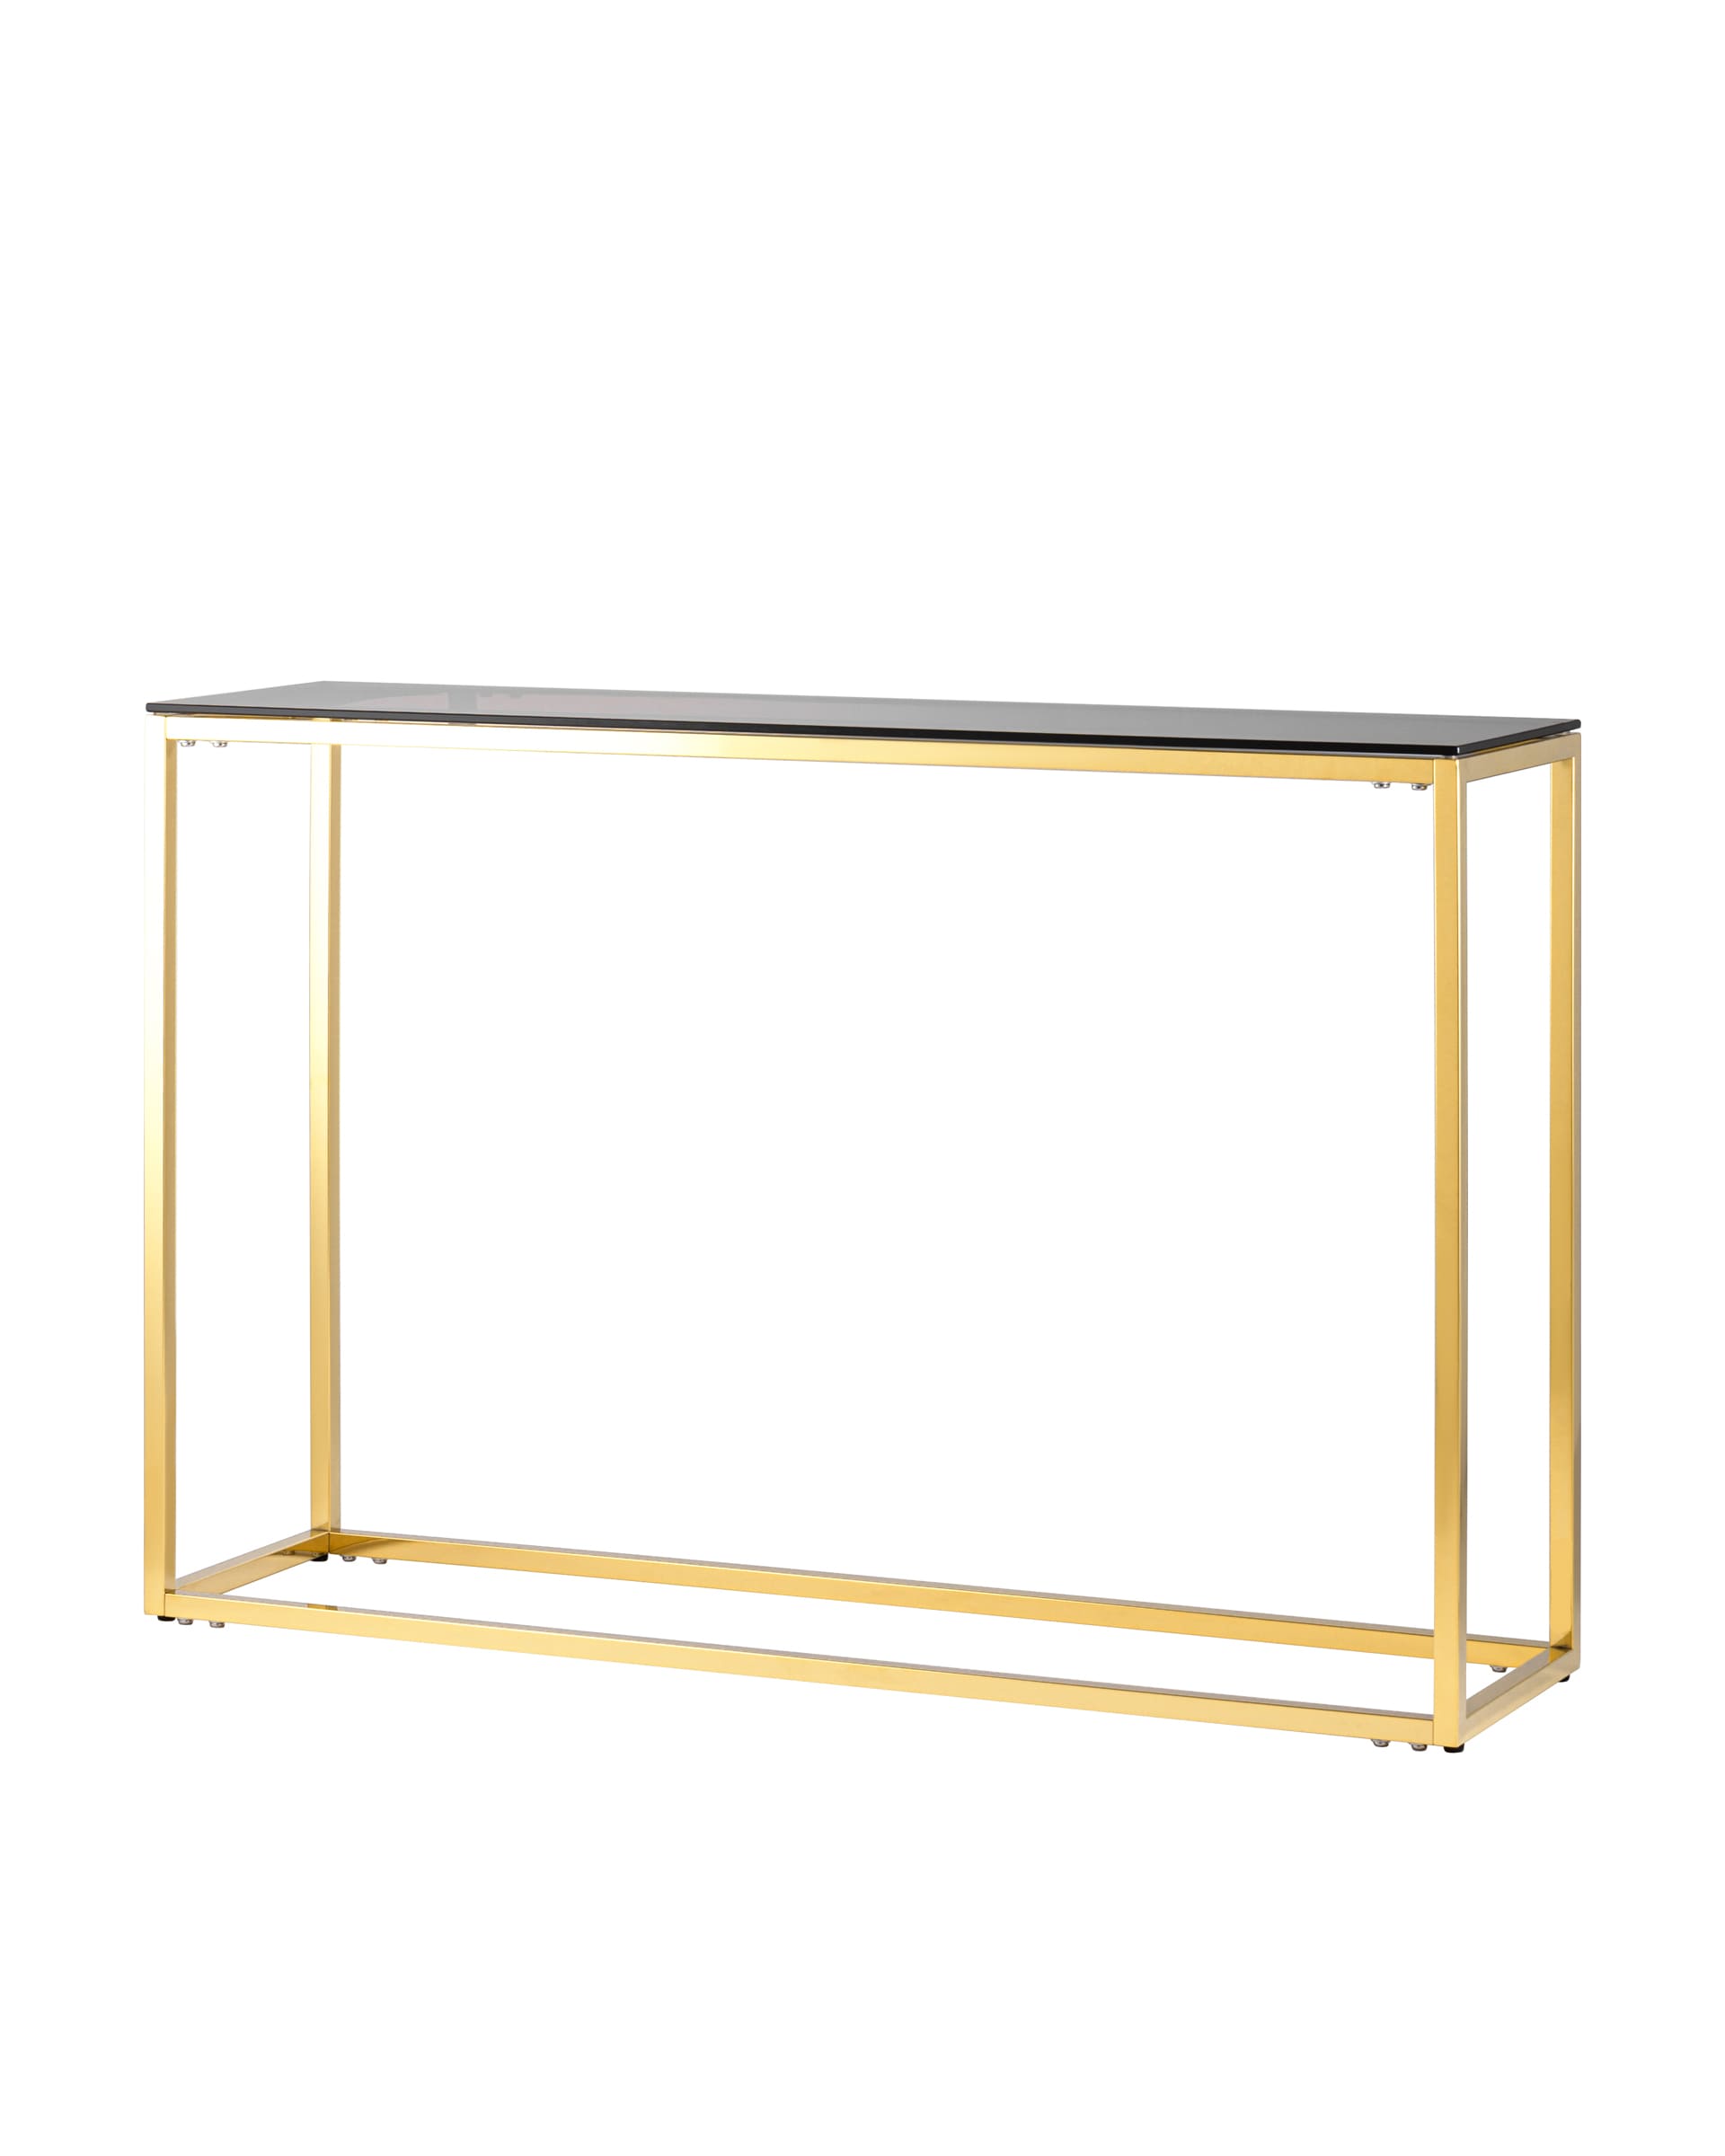 Консоль таун (stoolgroup) золотой 115x78x30 см.